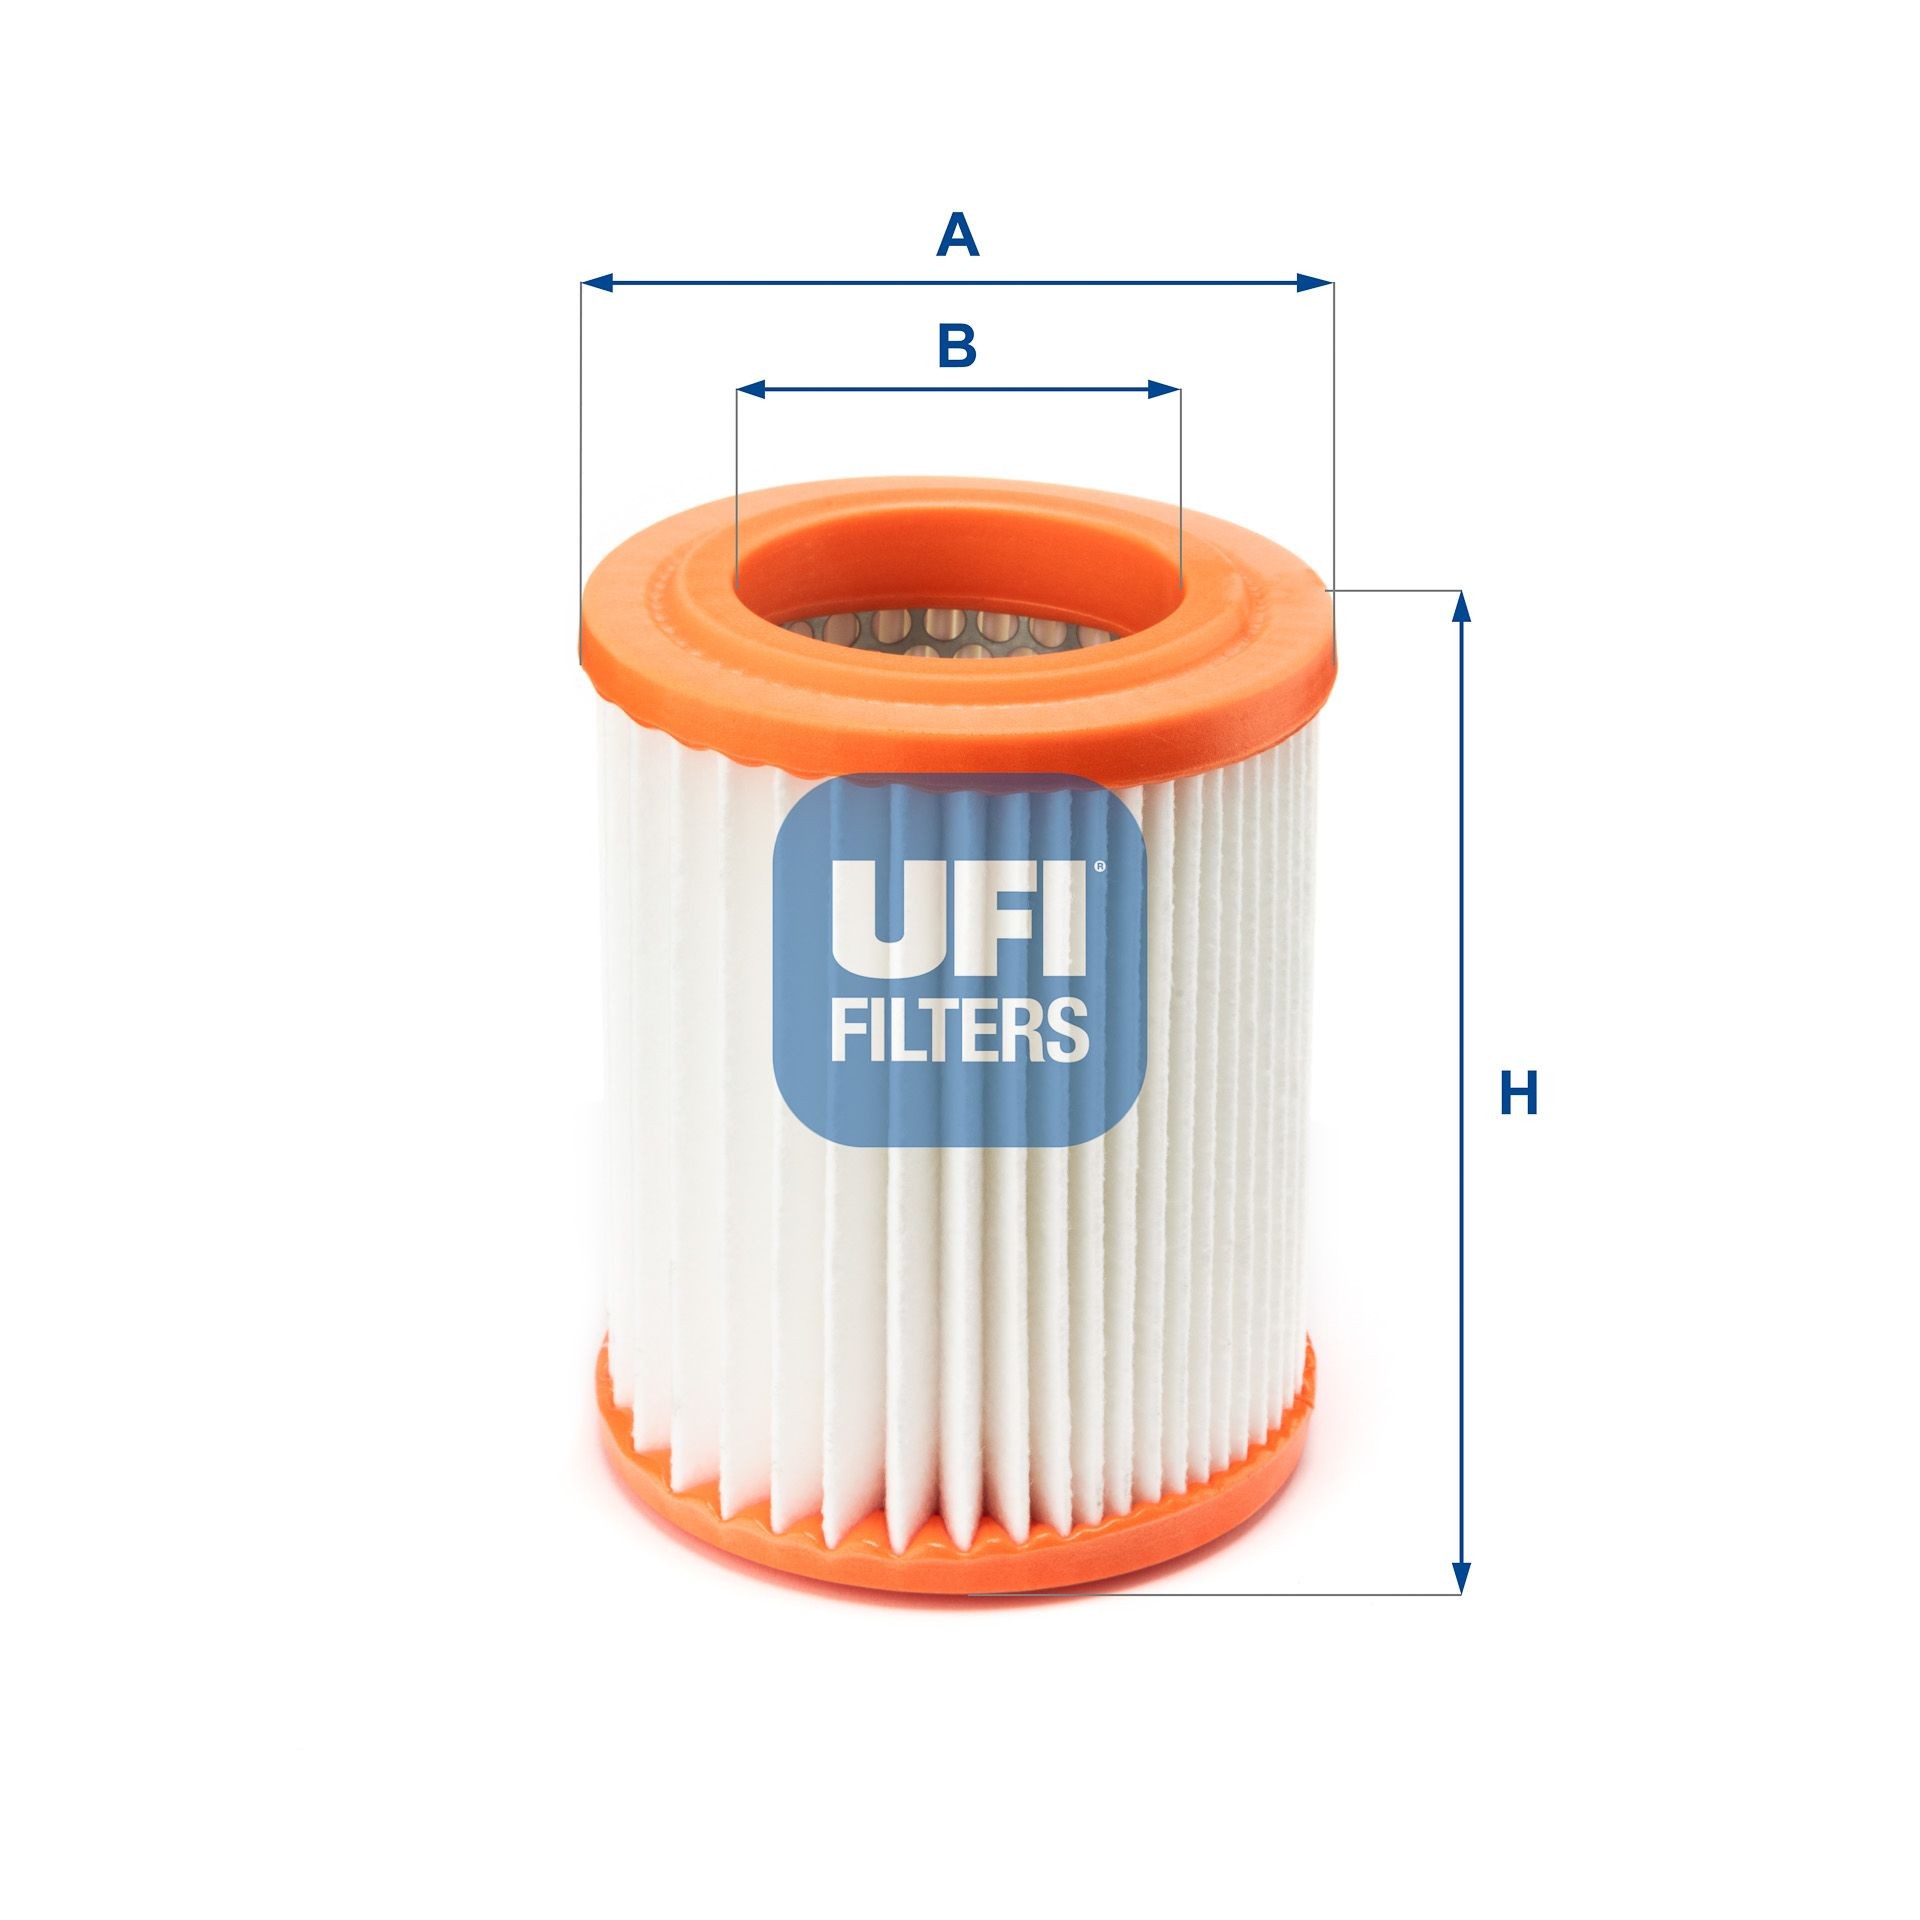 UFI 27.345.00 Air filter 410mm, 332mm, Filter Insert